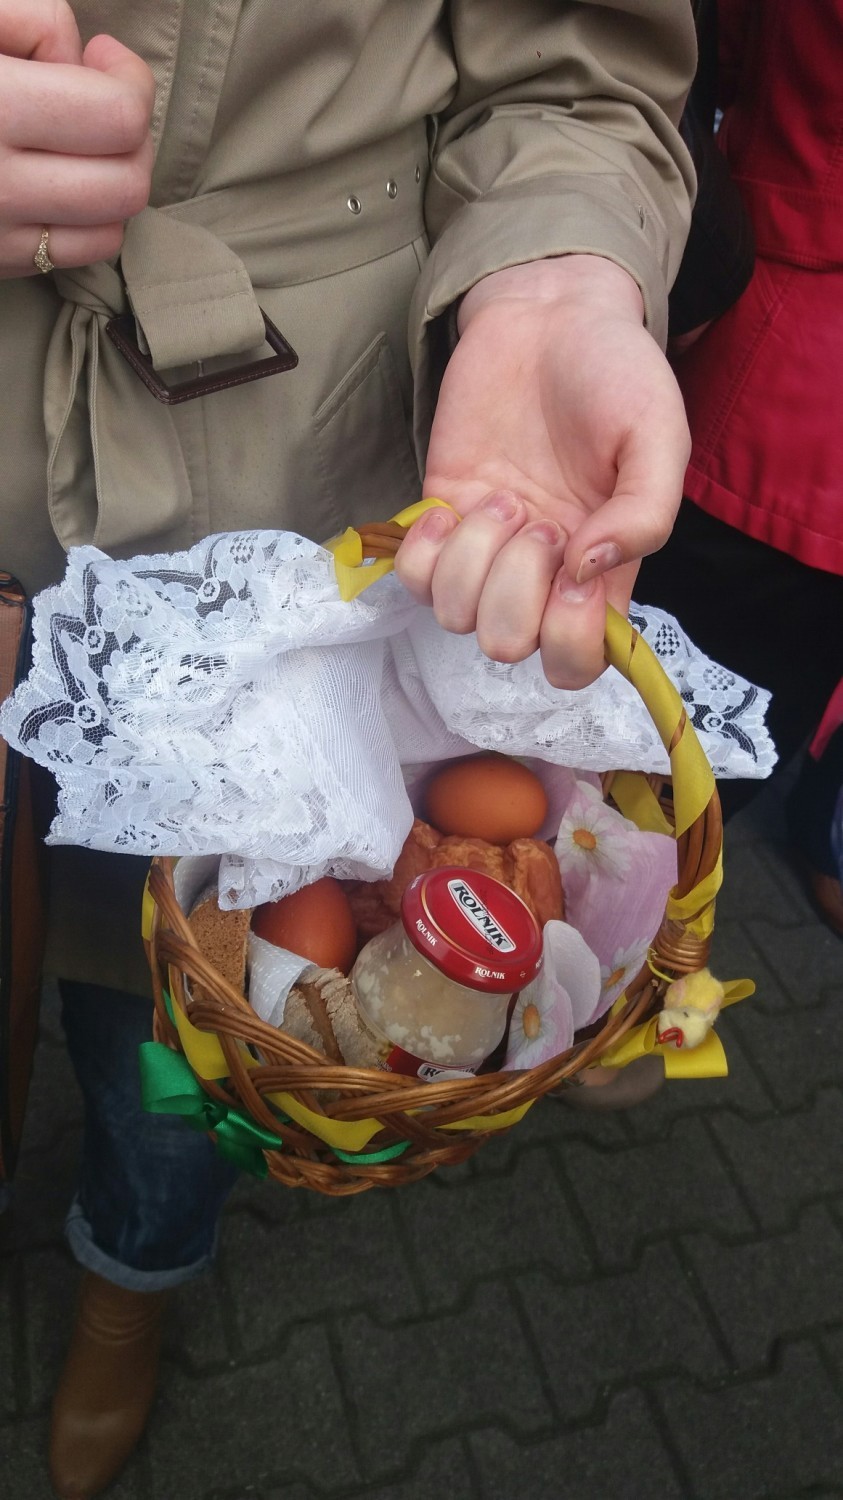 Ruda Śląska: Święcenie pokarmów w kościele pw. Ścięcia św. Jana Chrzciciela